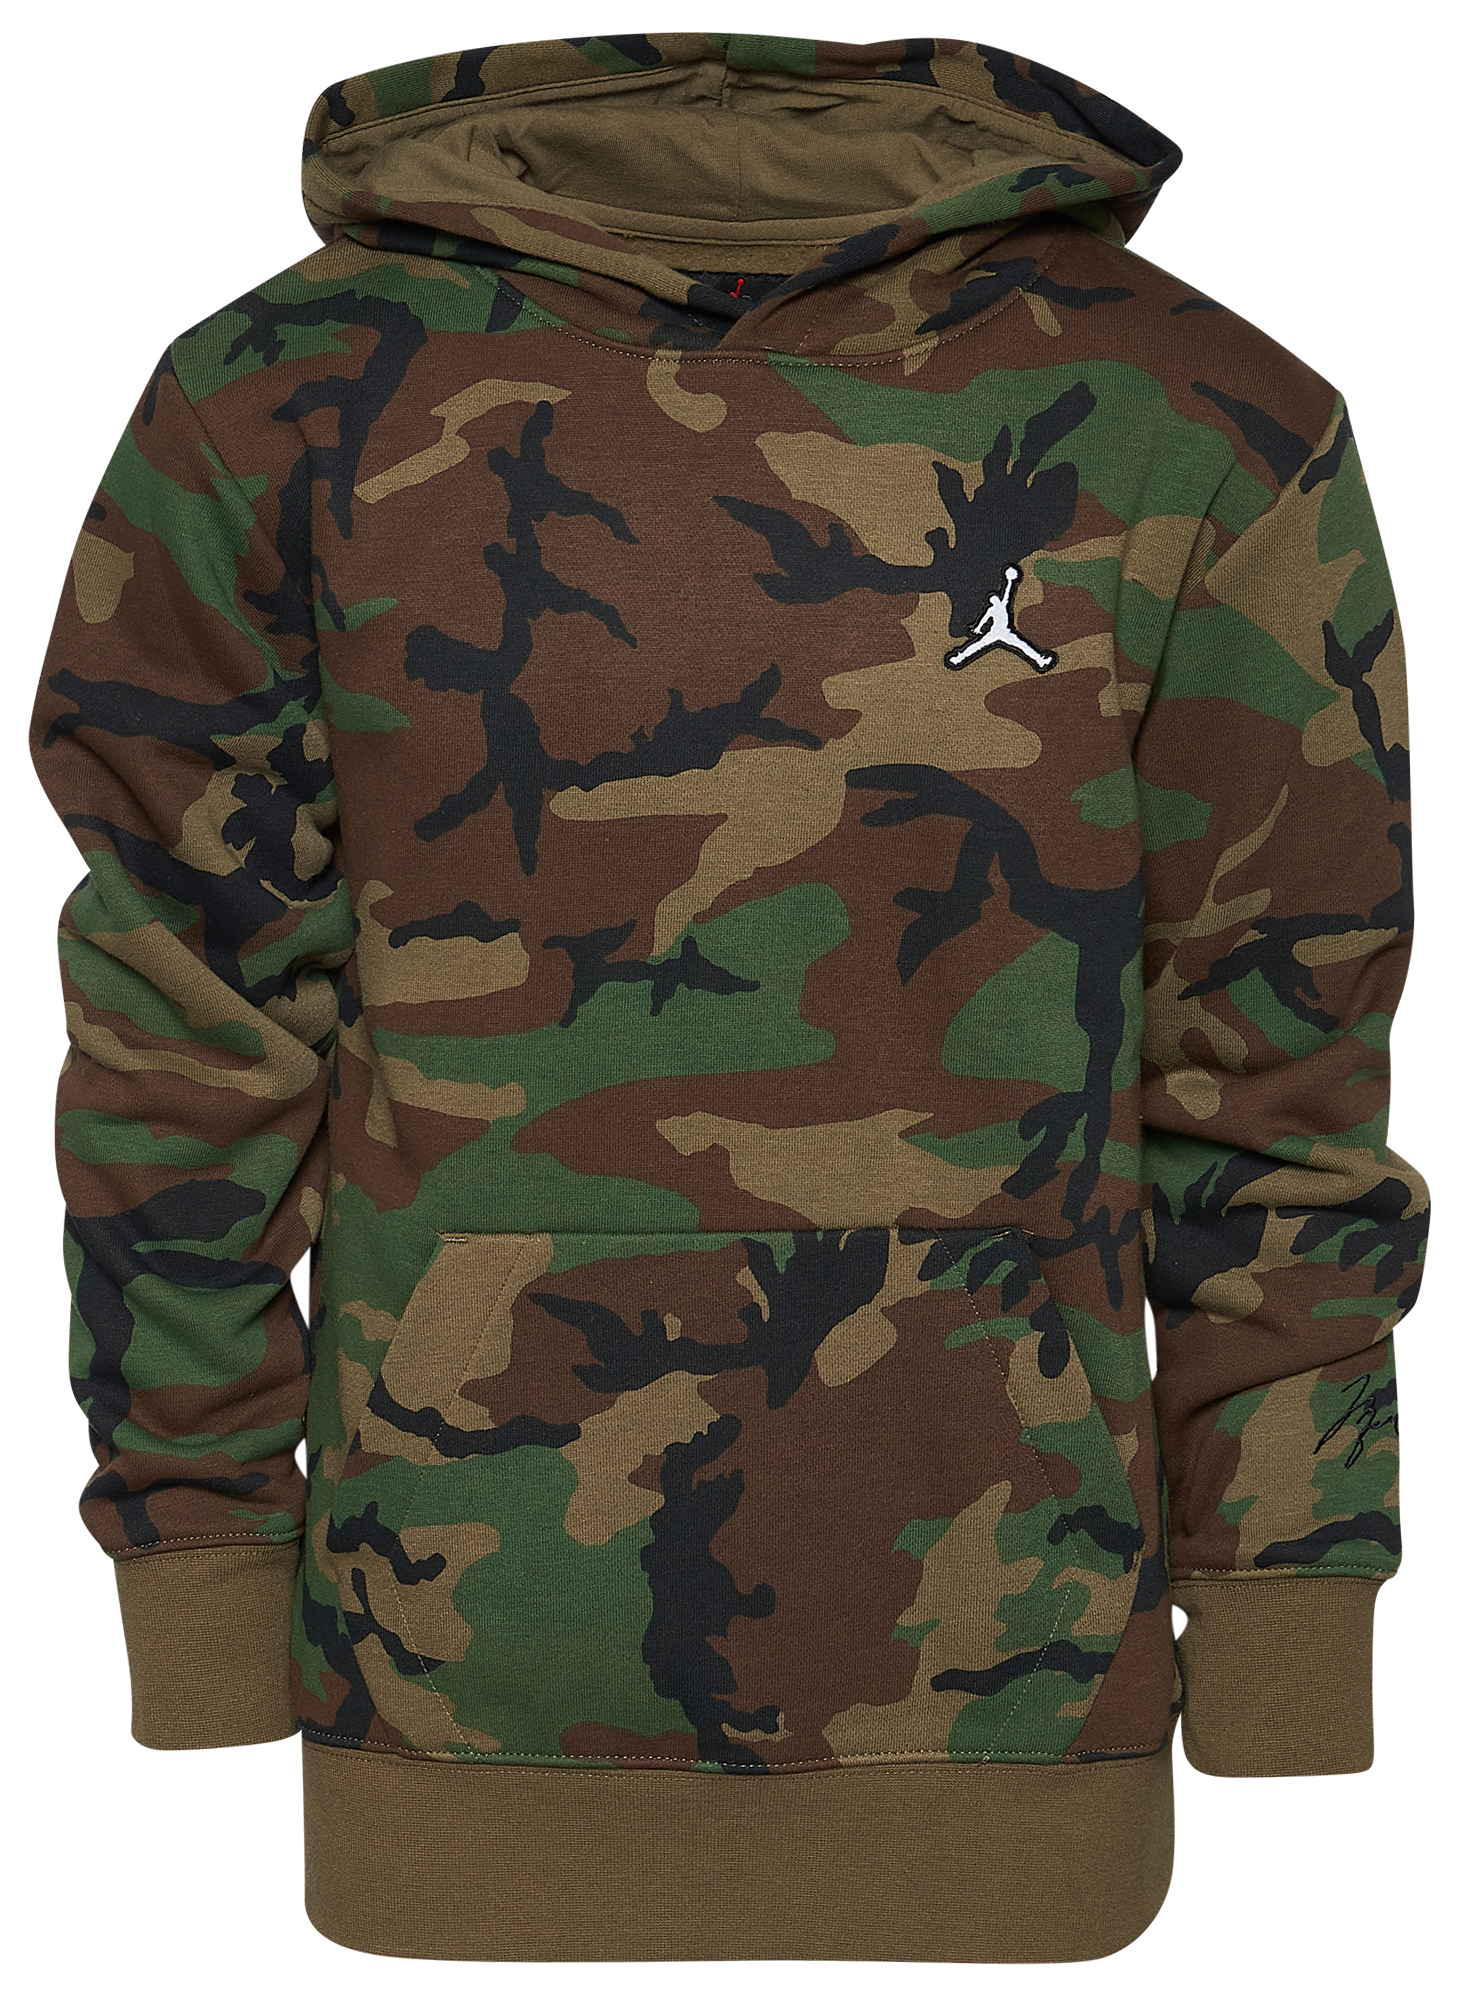 camouflage jordan hoodie